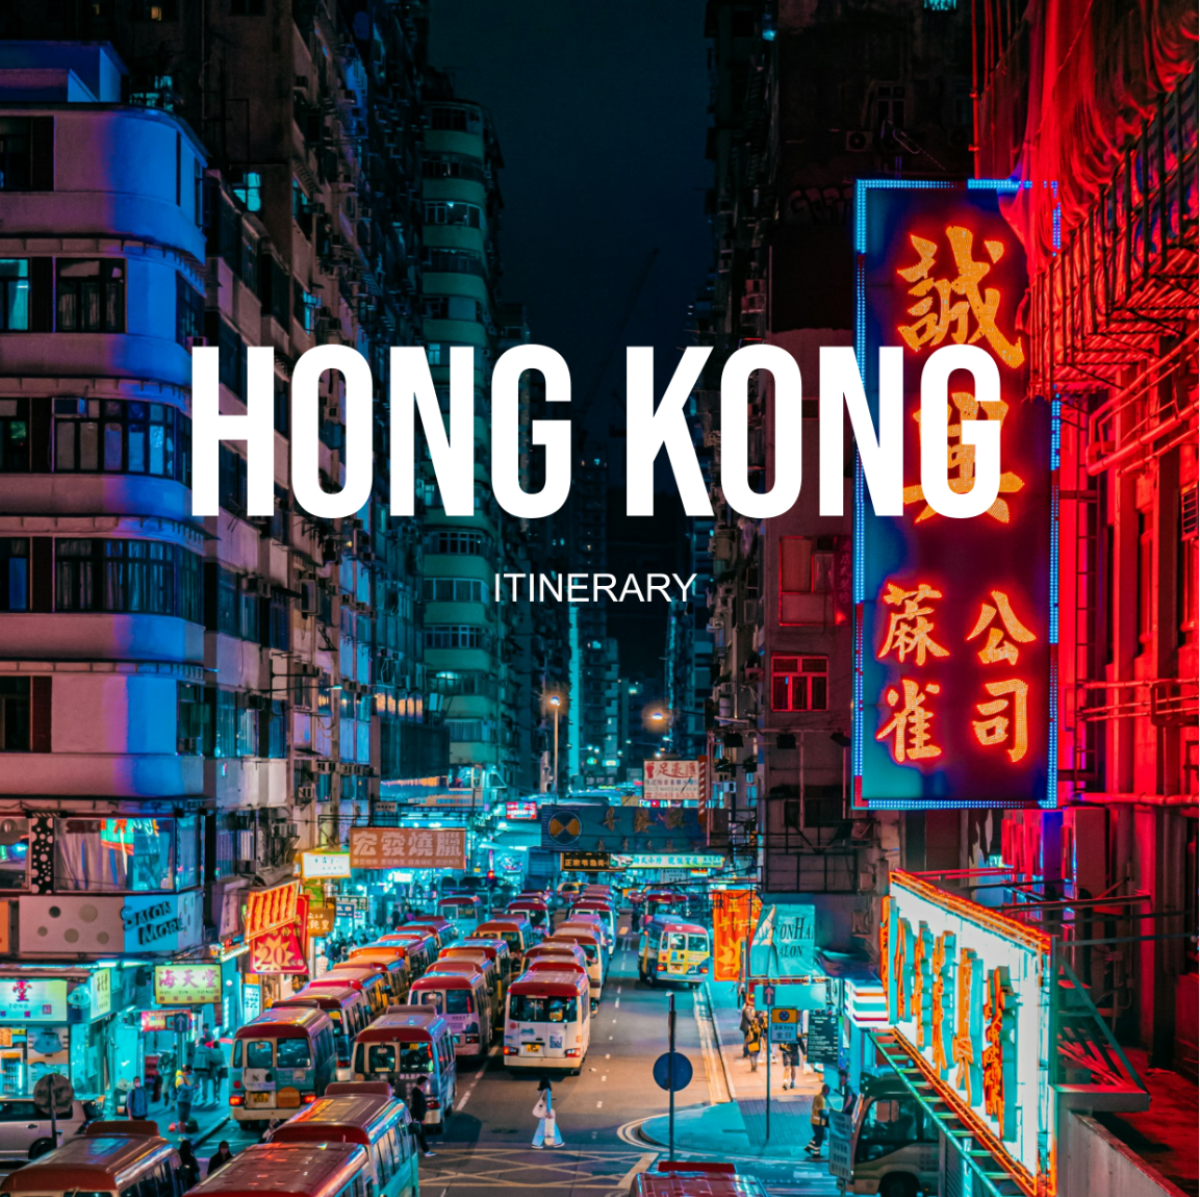 Hong Kong Itinerary Template